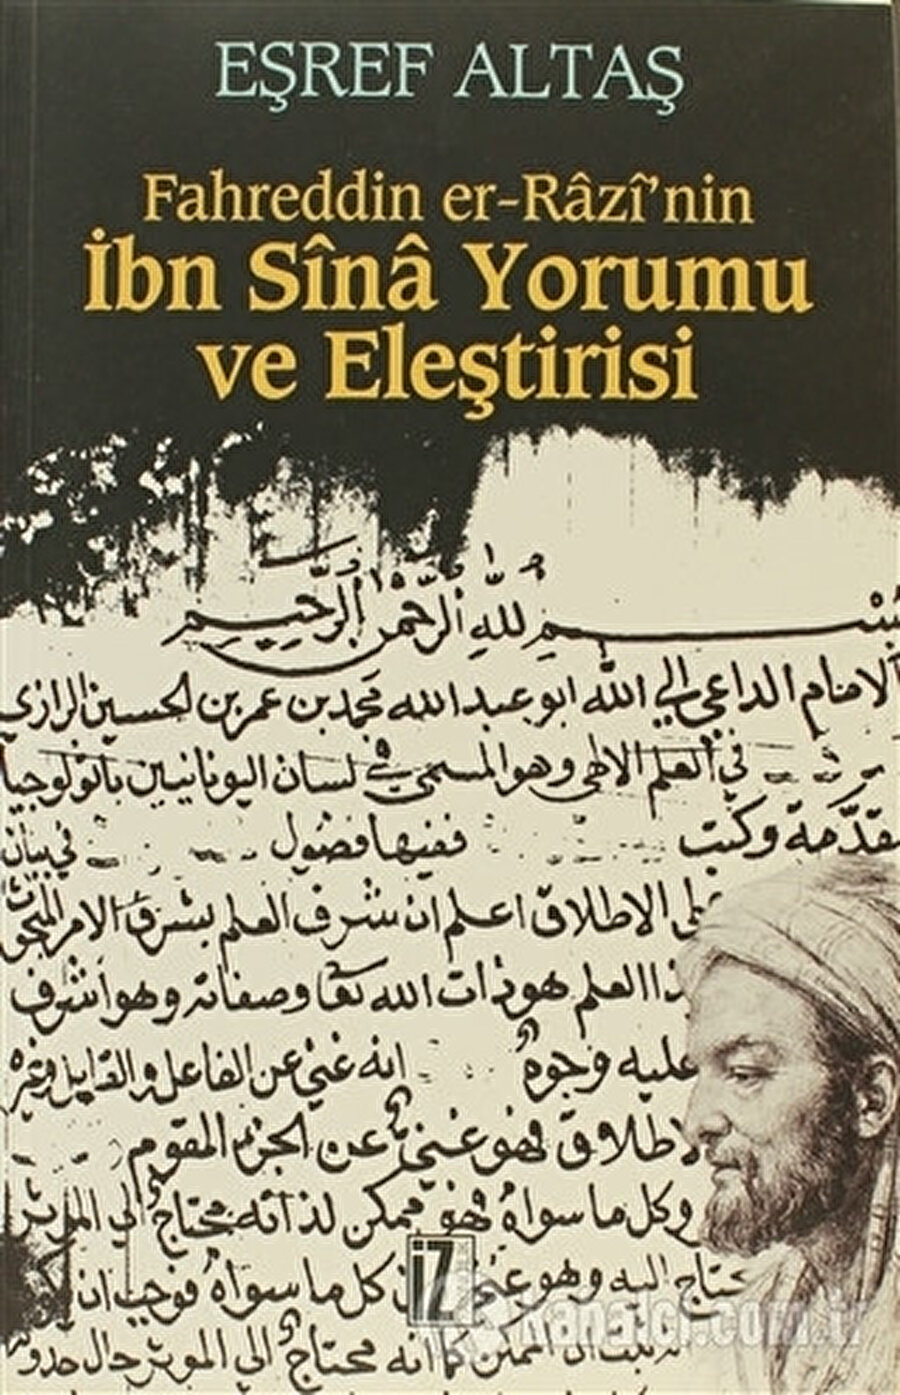 Fahreddin er-Razi’nin Ibn Sina Yorumu ve Elestirisi, Esref Altas, Iz, 2016